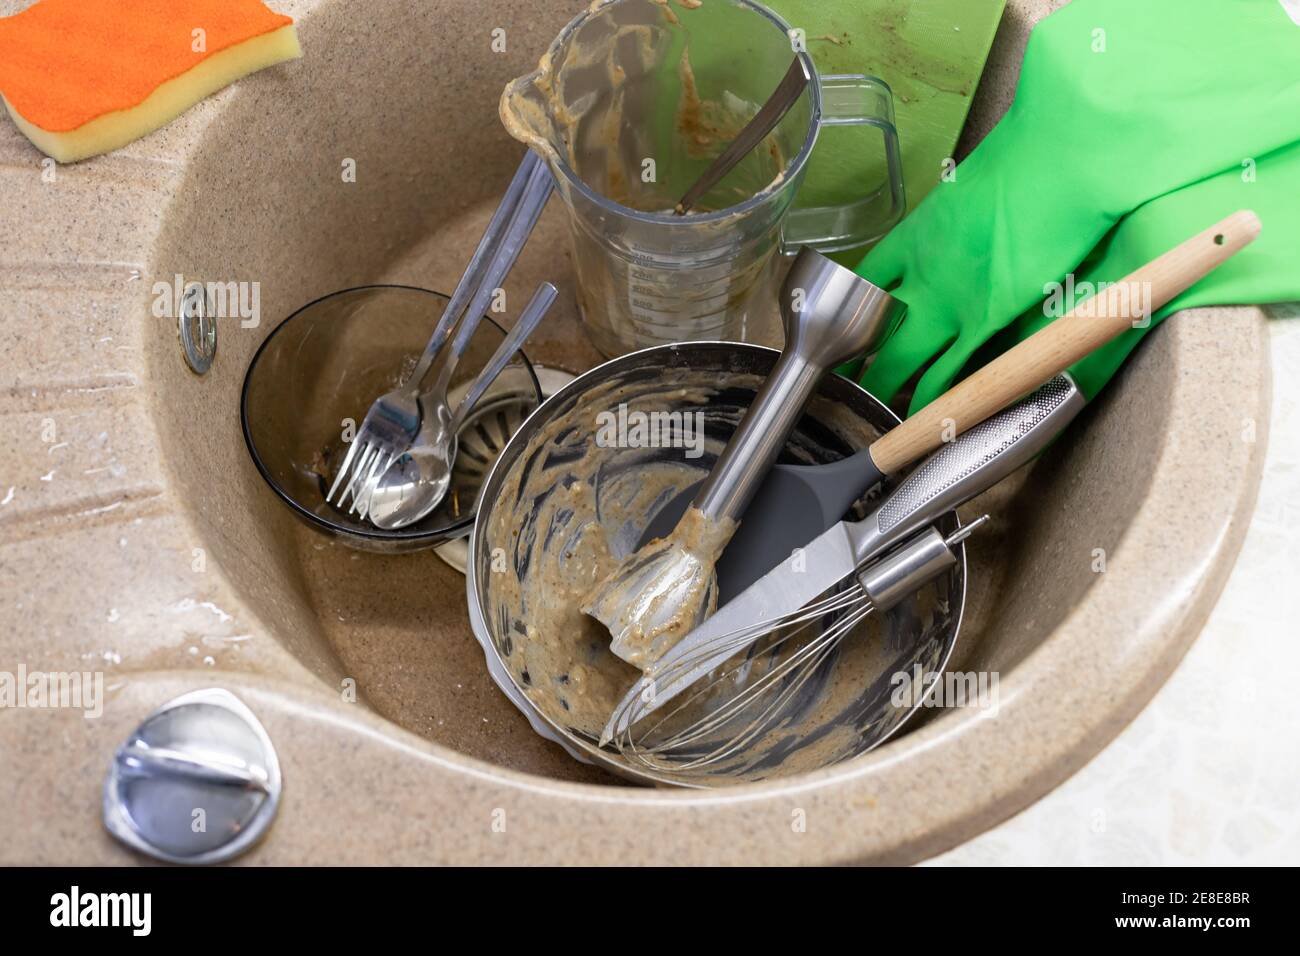 Ungewaschene Geschirr und Utensilien in Spülbecken, Latexhandschuhe und Waschschwamm Stockfoto